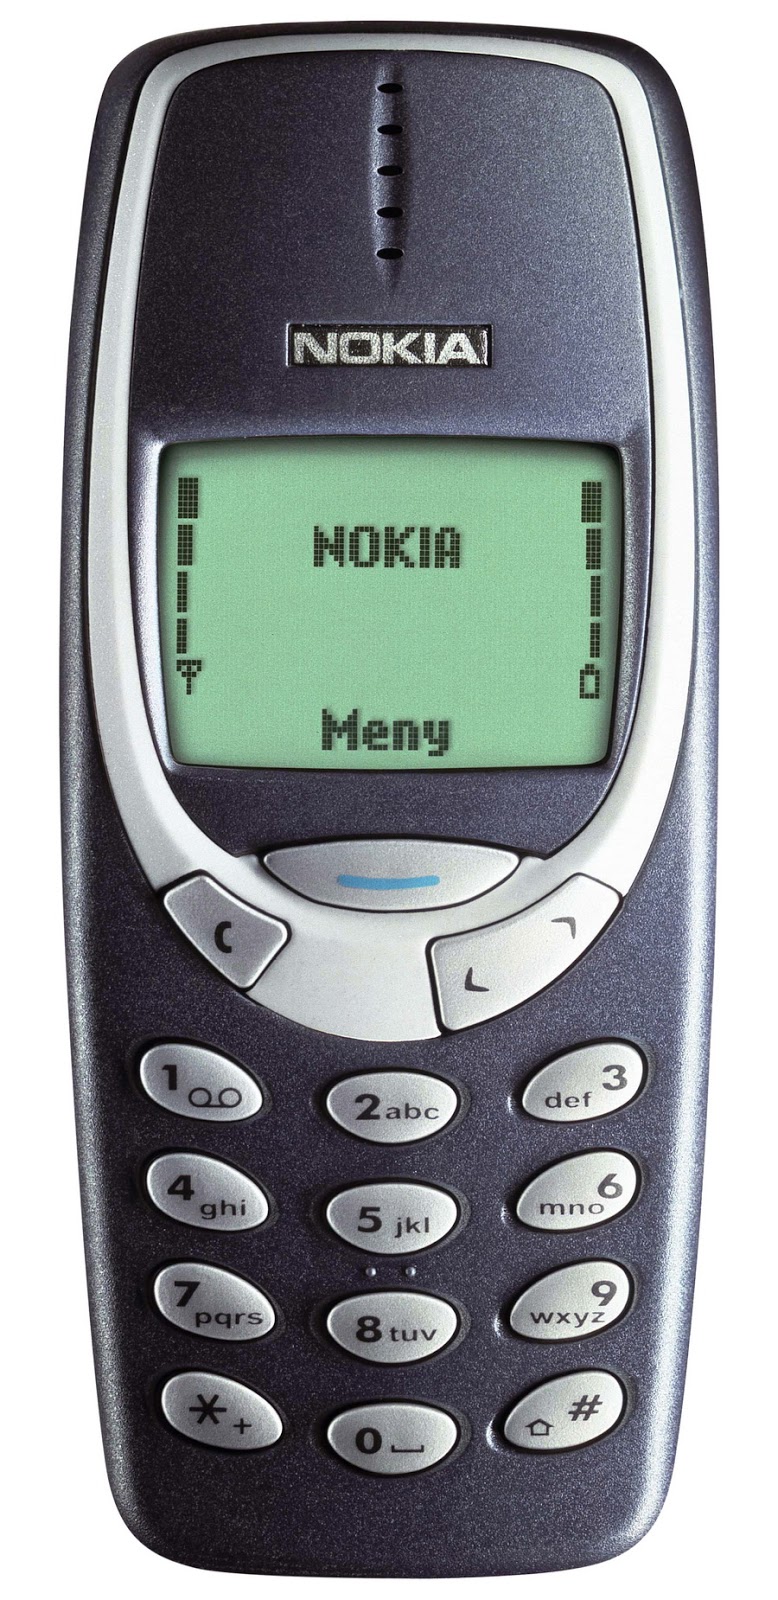 Classic Snake - Nokia 97 Old - Chơi game: Là một trong những trò chơi đã trở thành huyền thoại từ thời Nokia 97 Old, Classic Snake sẽ khiến bạn liên tưởng đến một kỷ nguyên đầy nhớ nhung và lãng mạn. Hãy cùng nhau tái hiện lại những khoảnh khắc ngọt ngào đó.